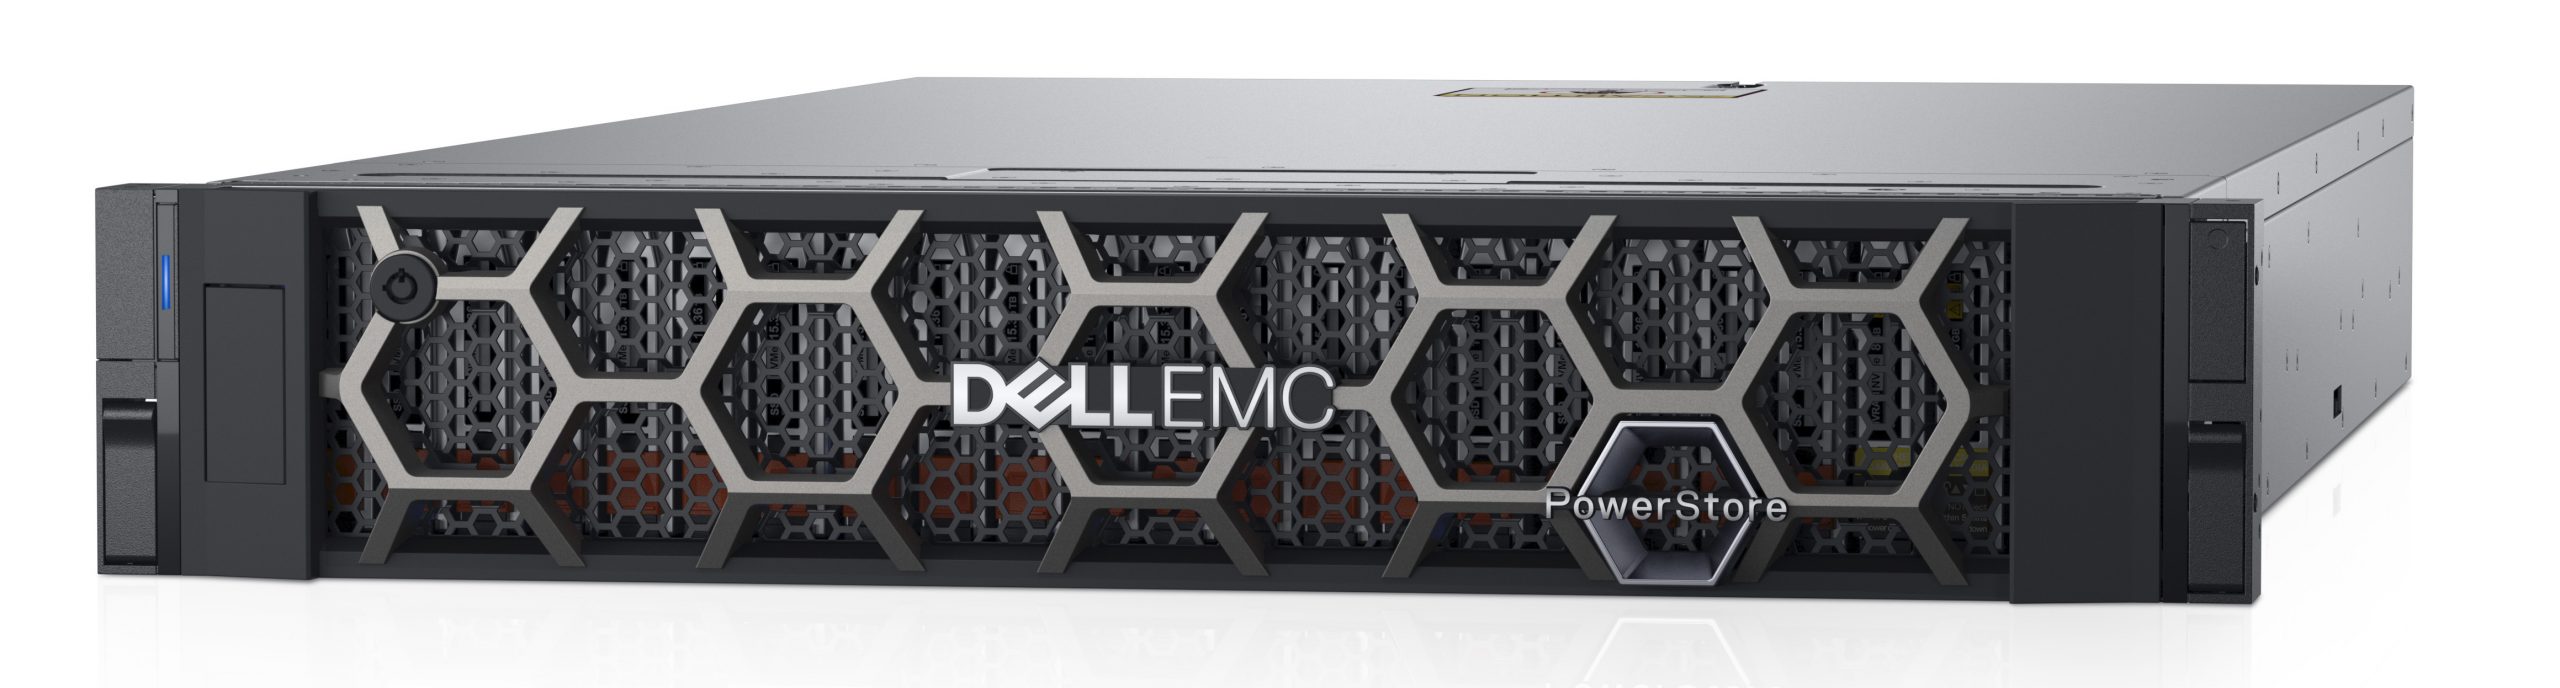 Dell Technologies está mejorando el rendimiento de los sistemas de almacenamiento empresarial Dell EMC PowerStore con nuevo software